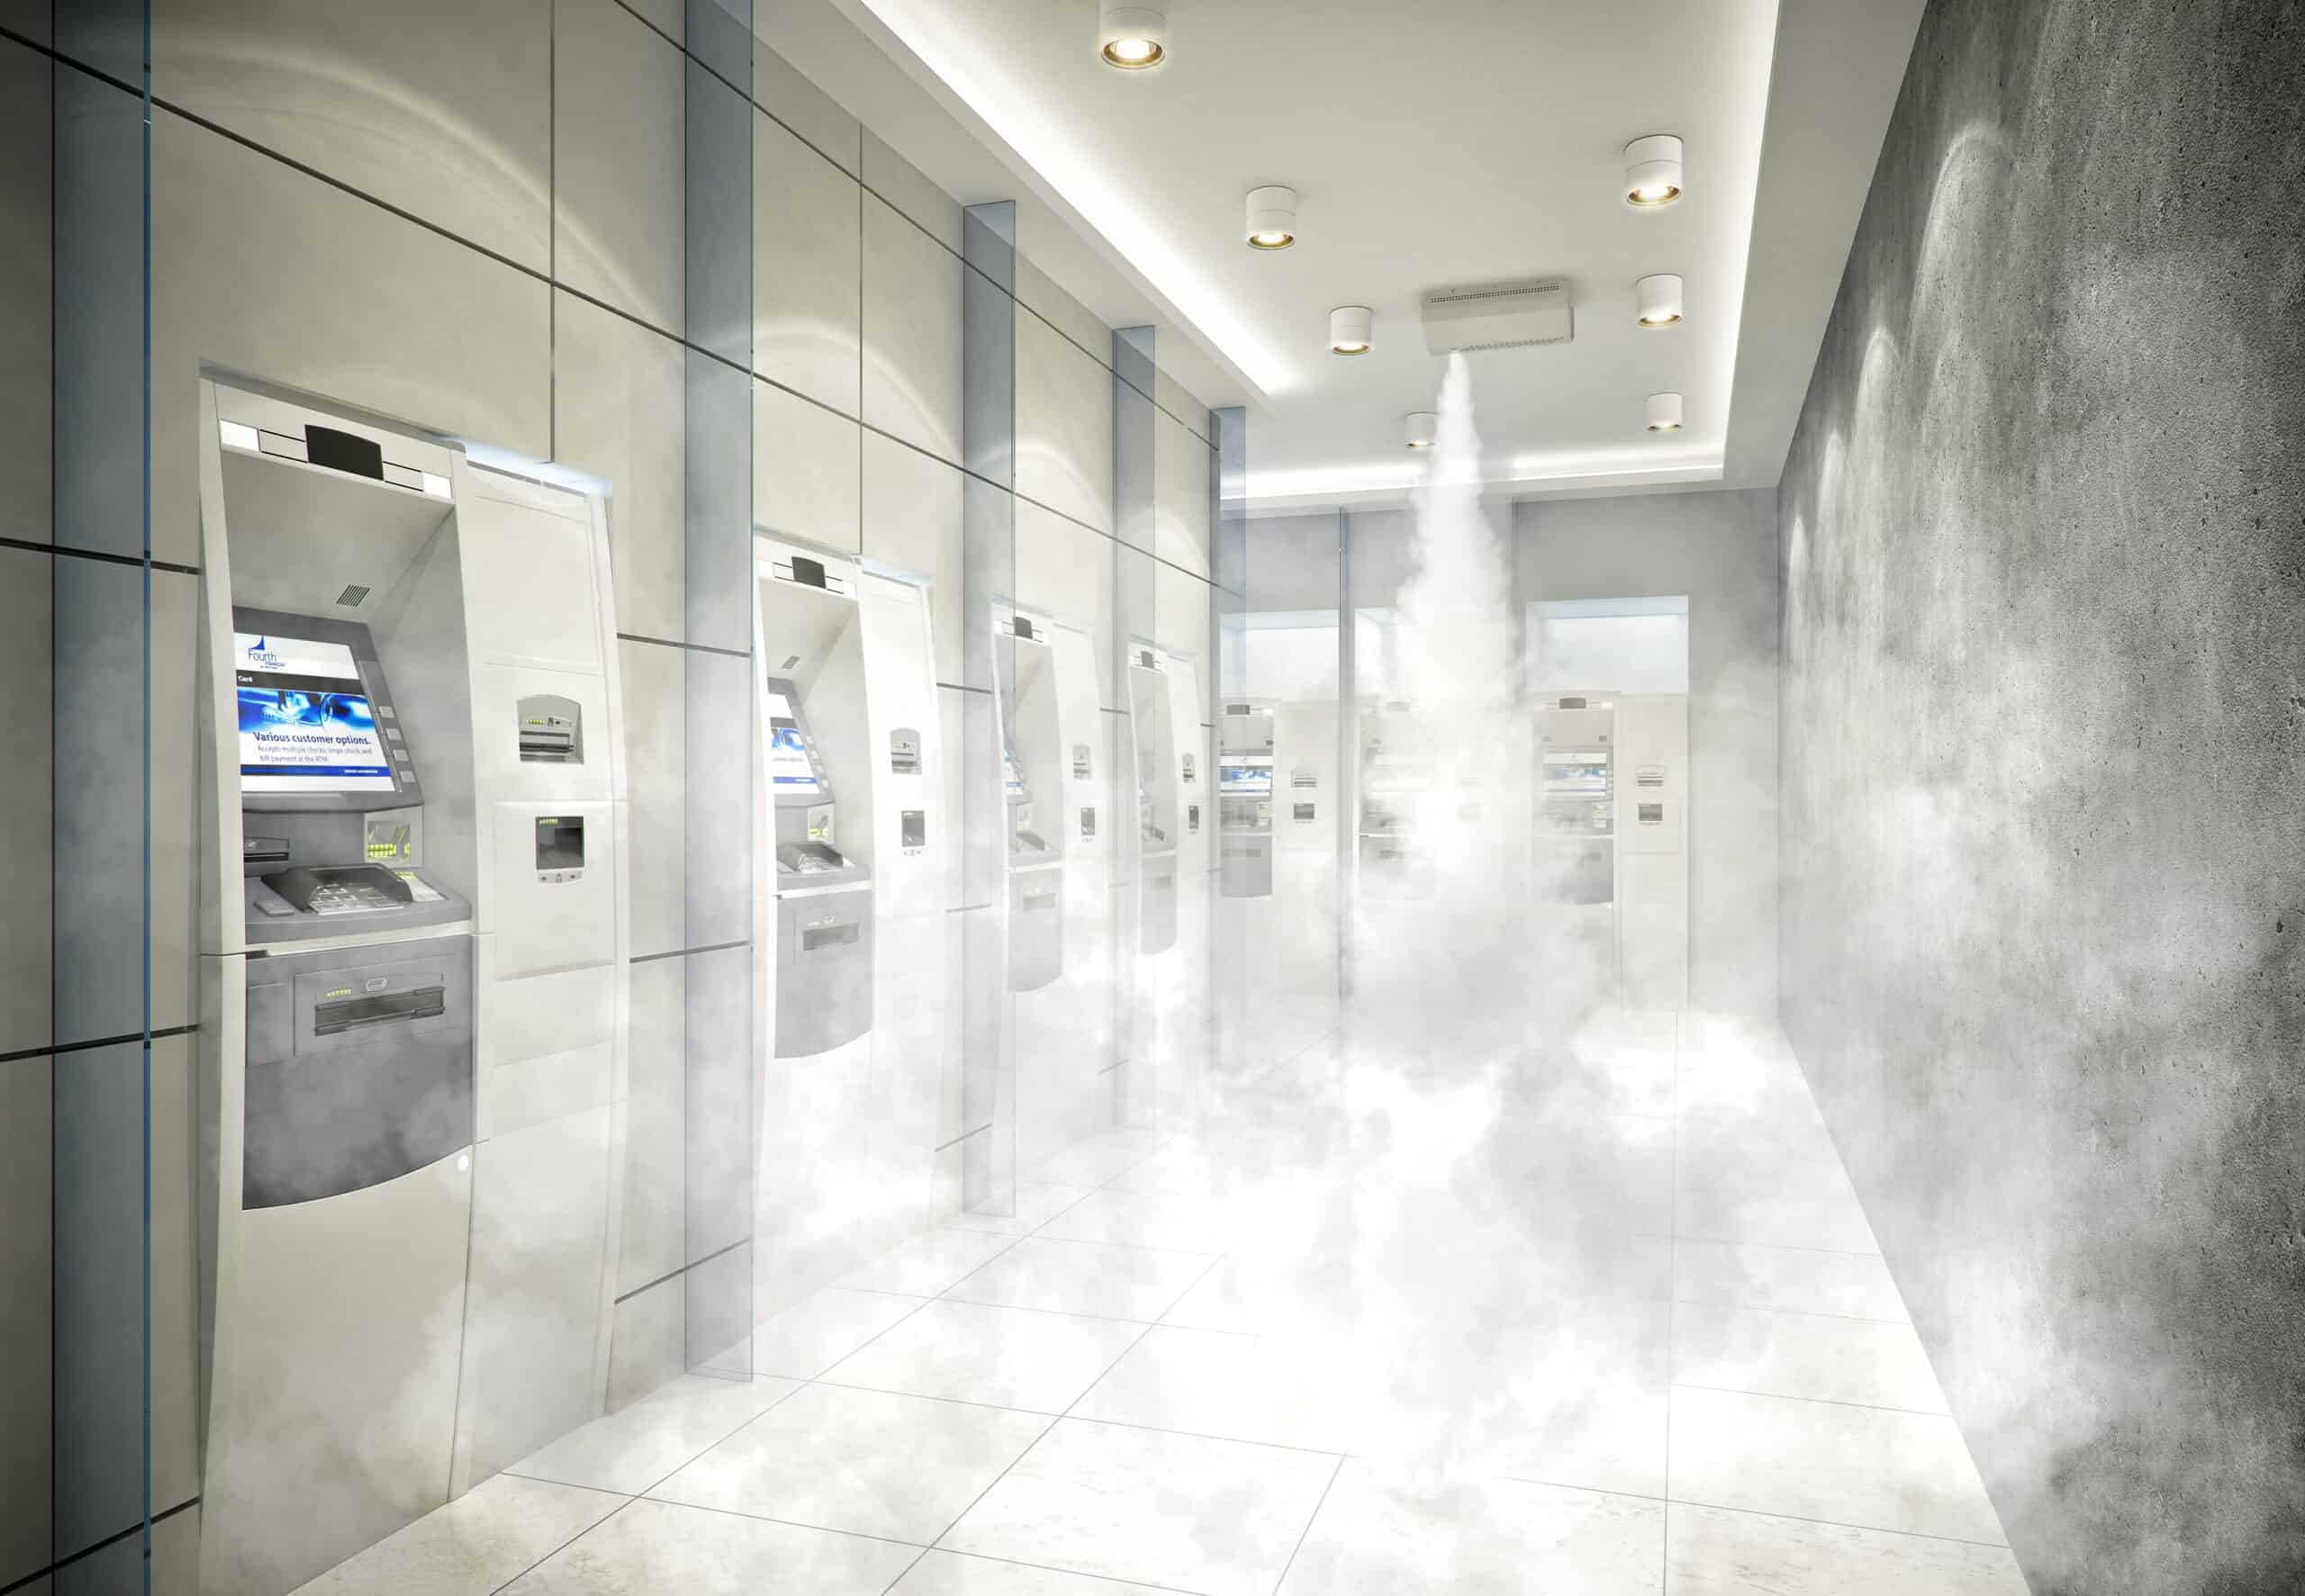 Nebelsysteme schützen Geldautomaten